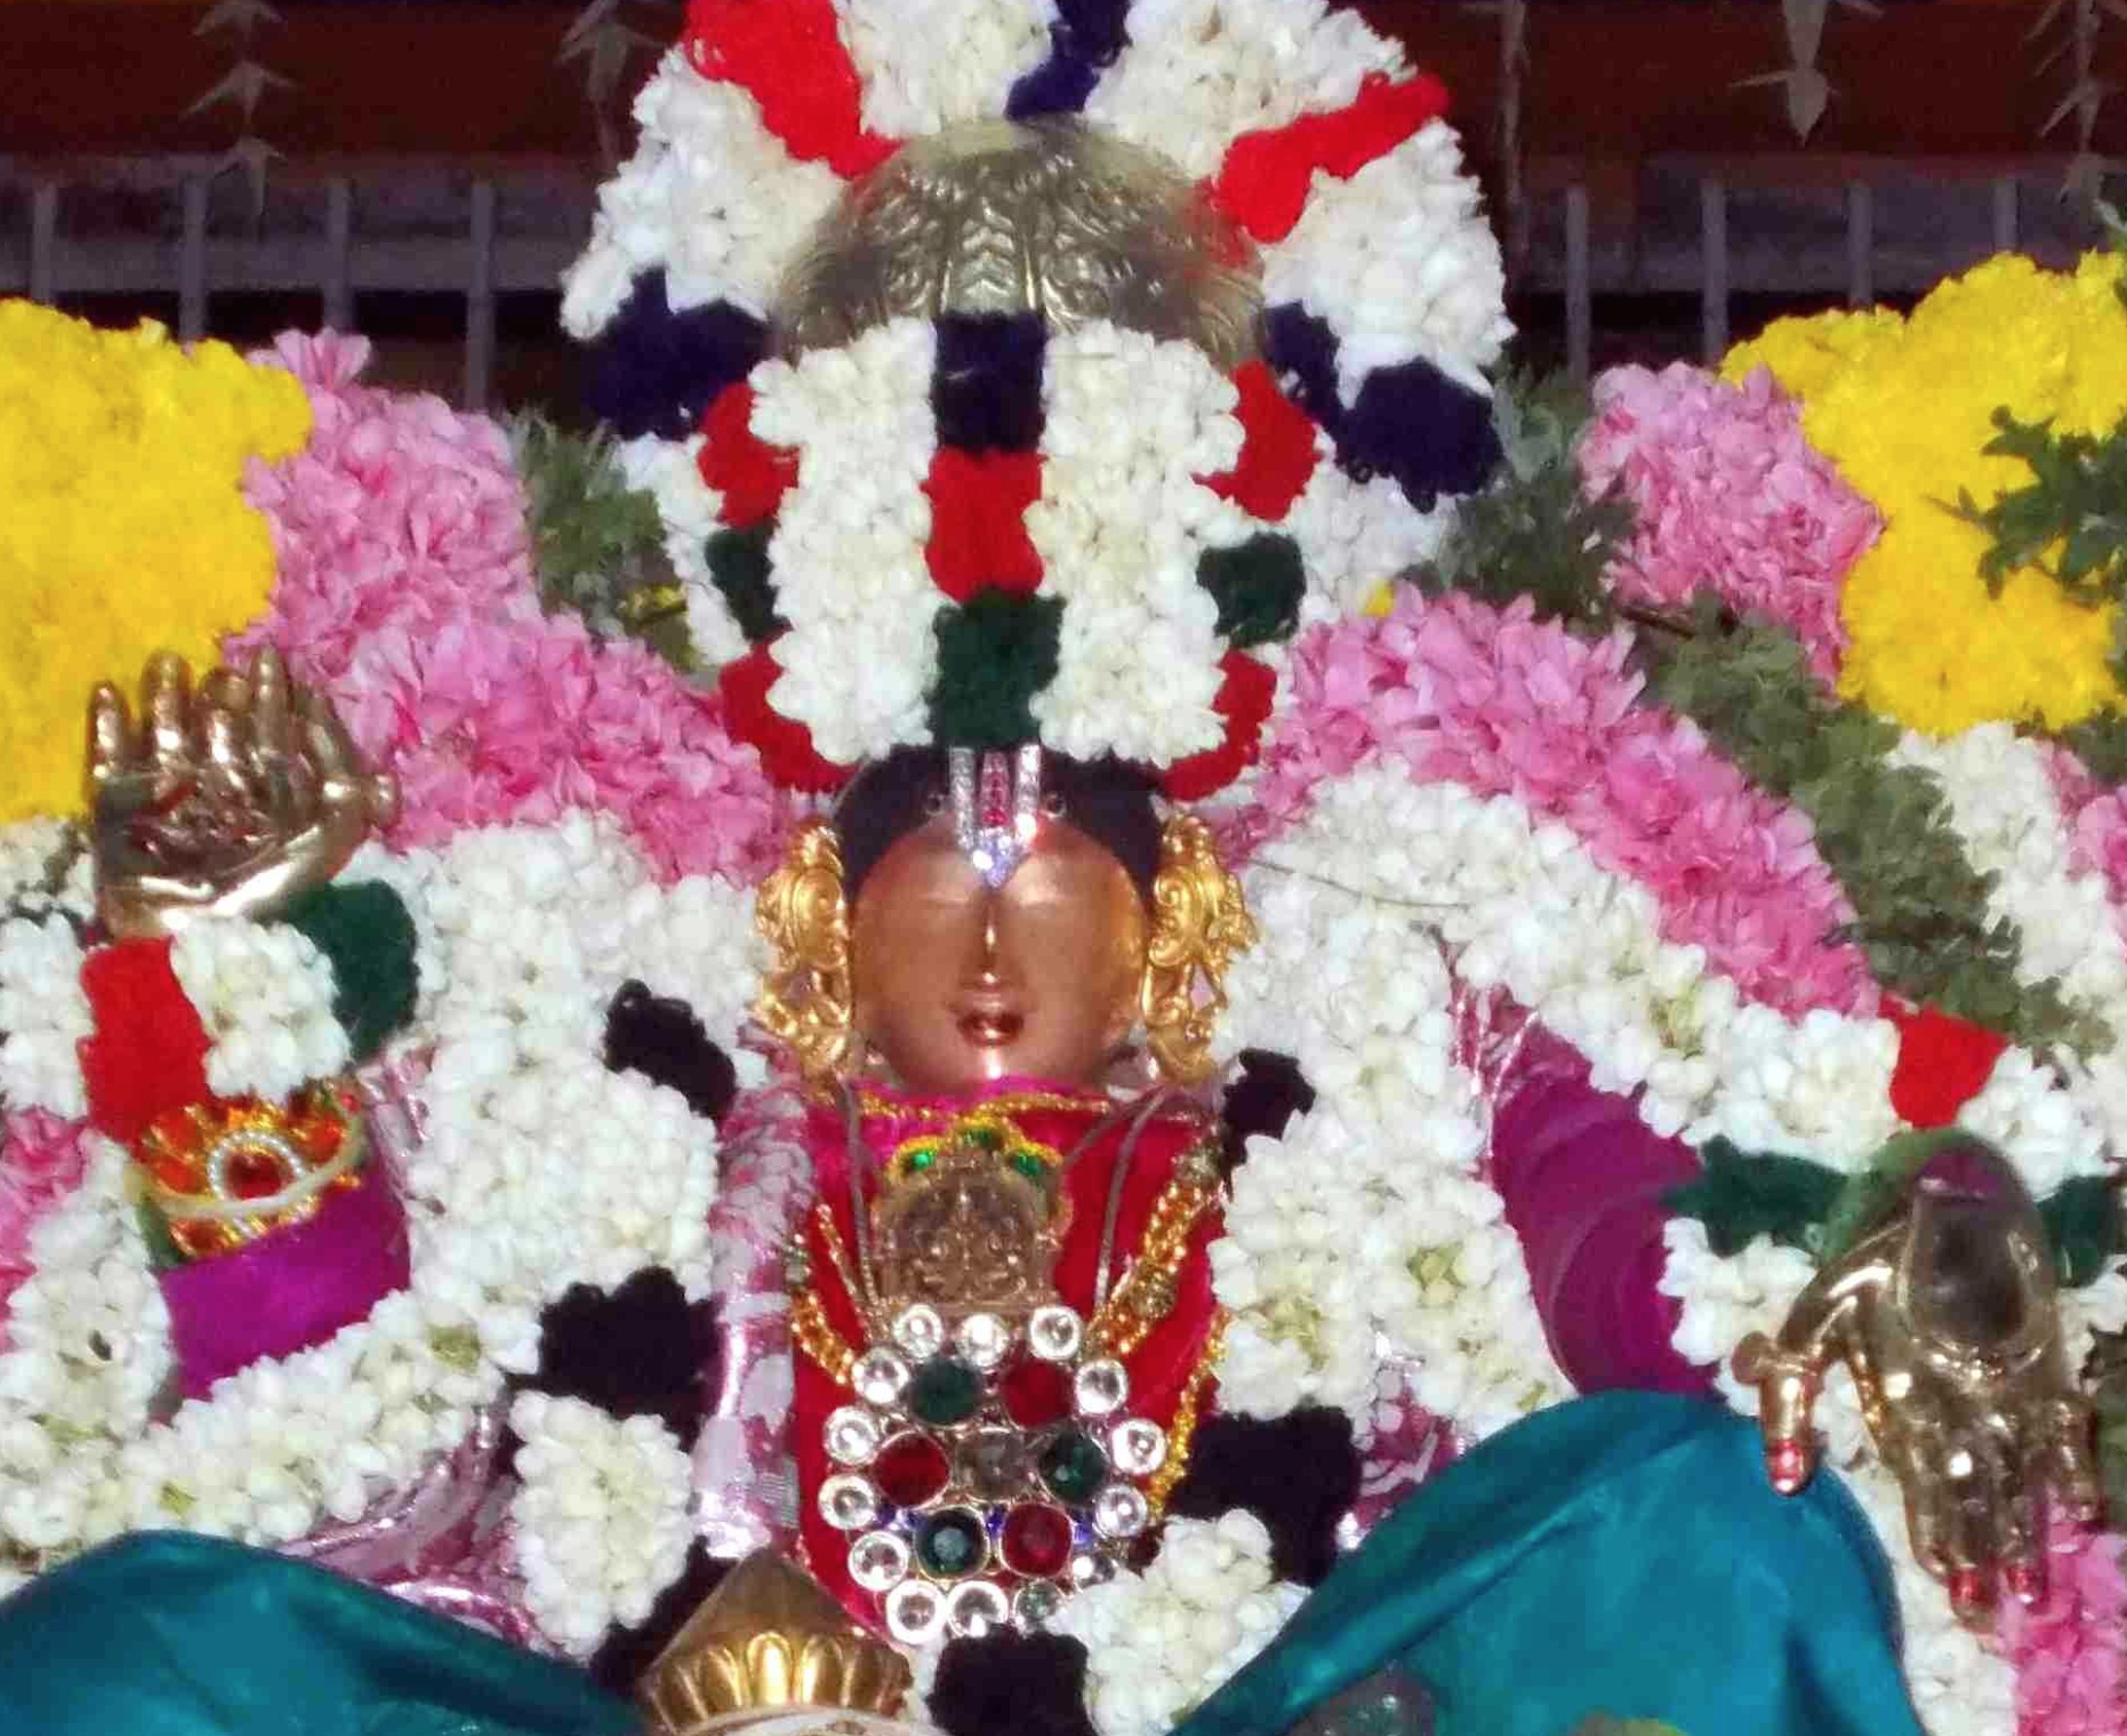 Thirukannamangai Garuda Thirunakshatram